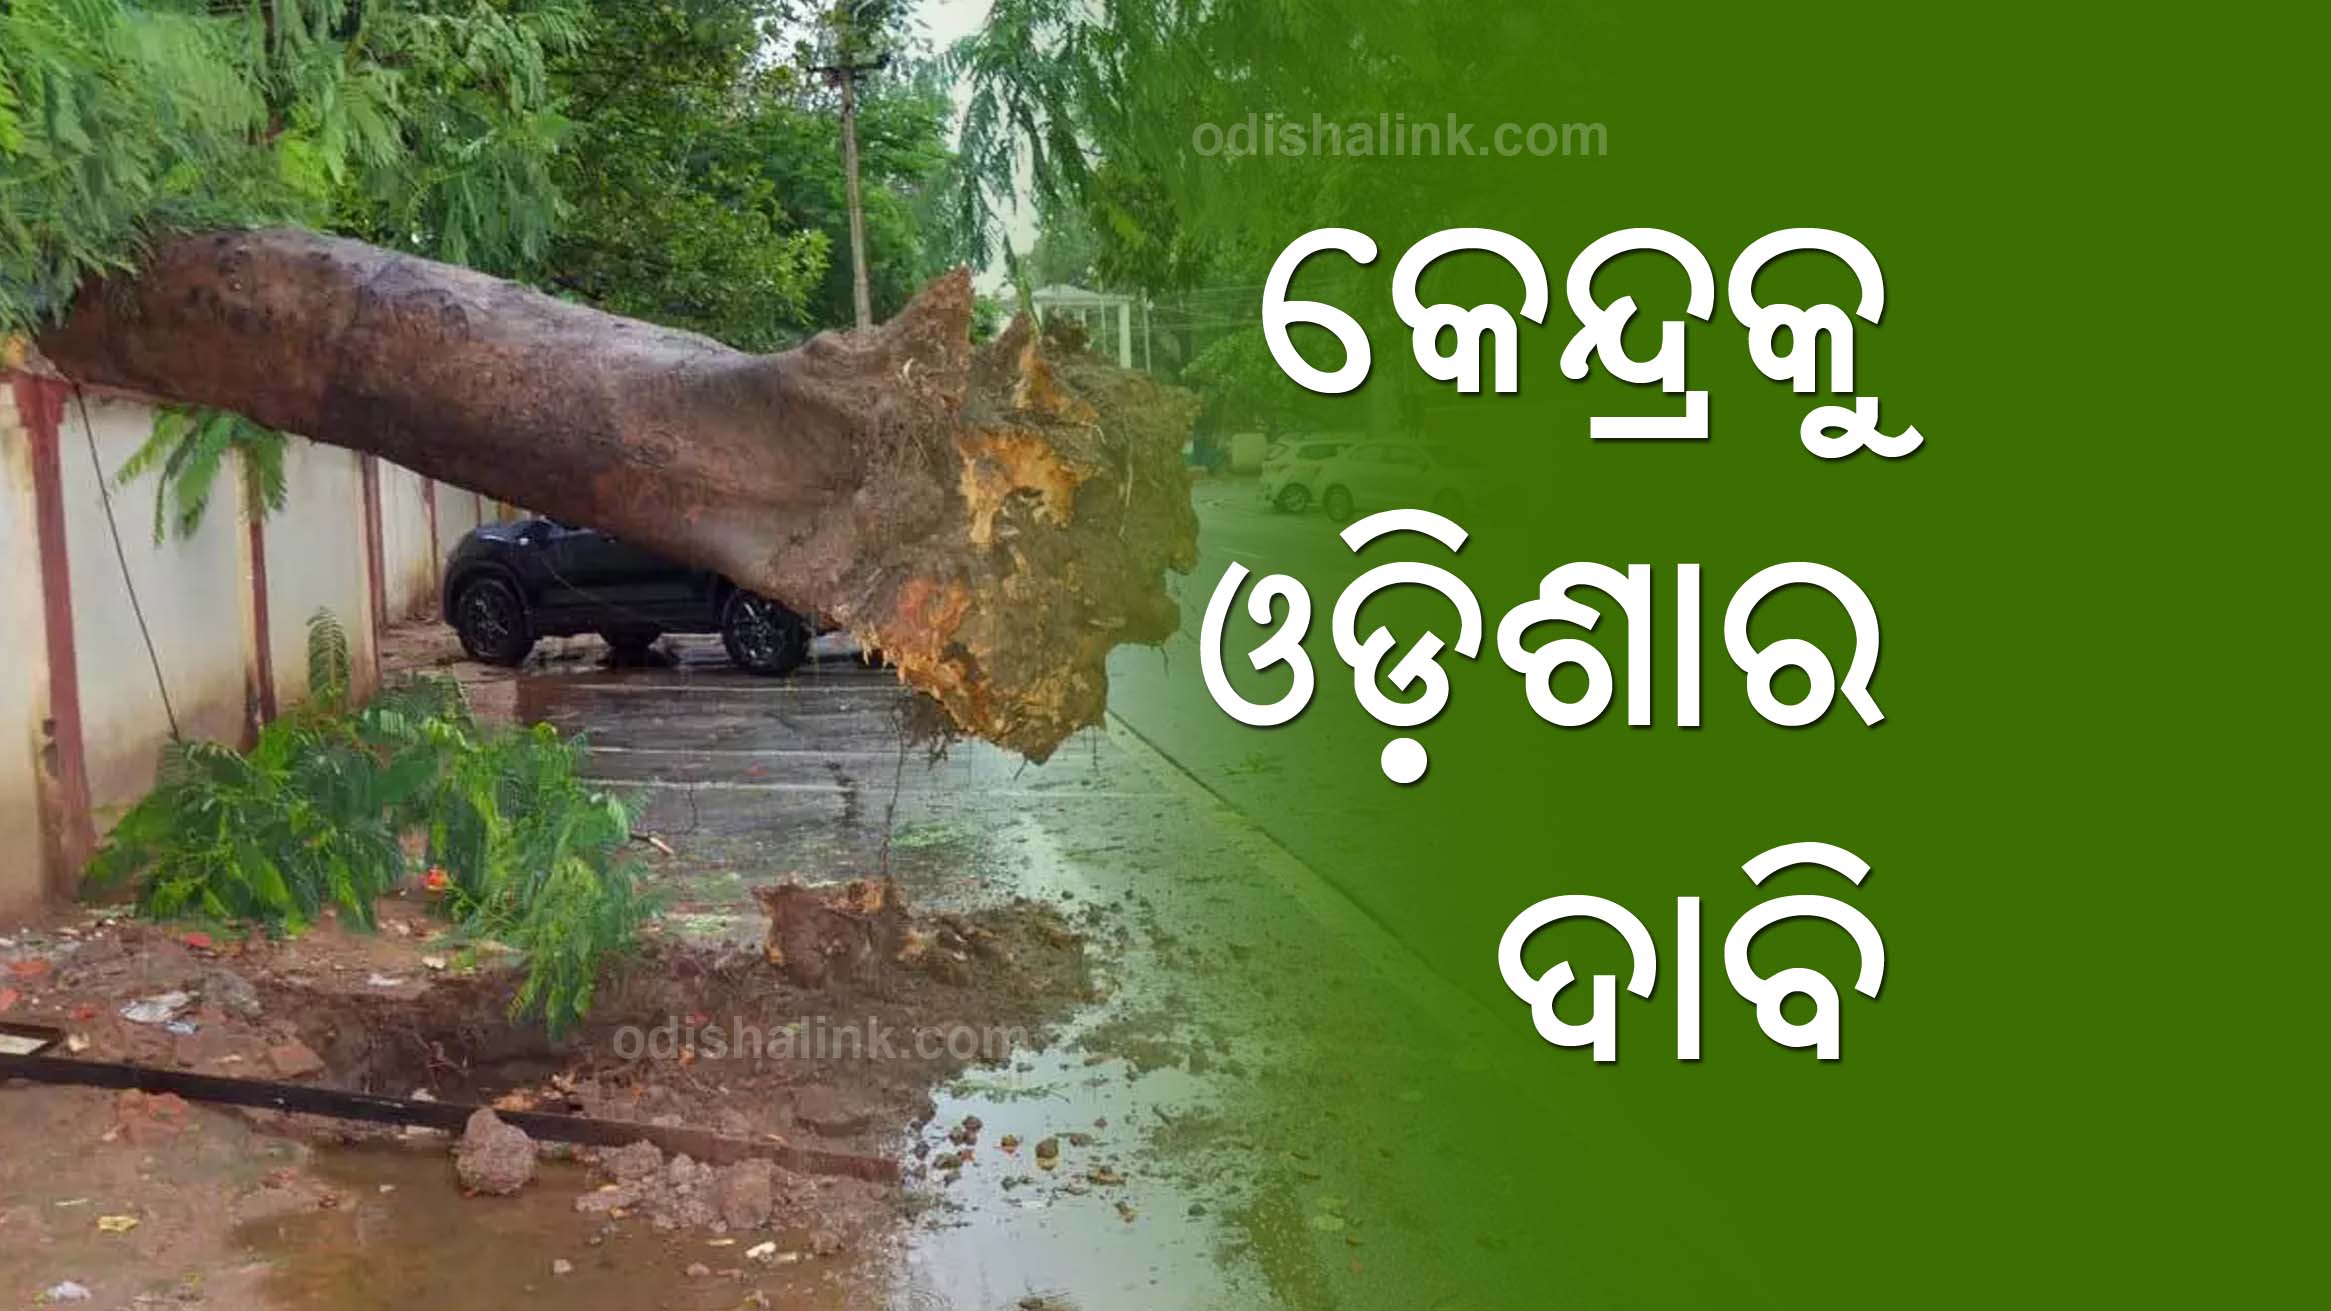 Odisha demands permanent solution for cyclones